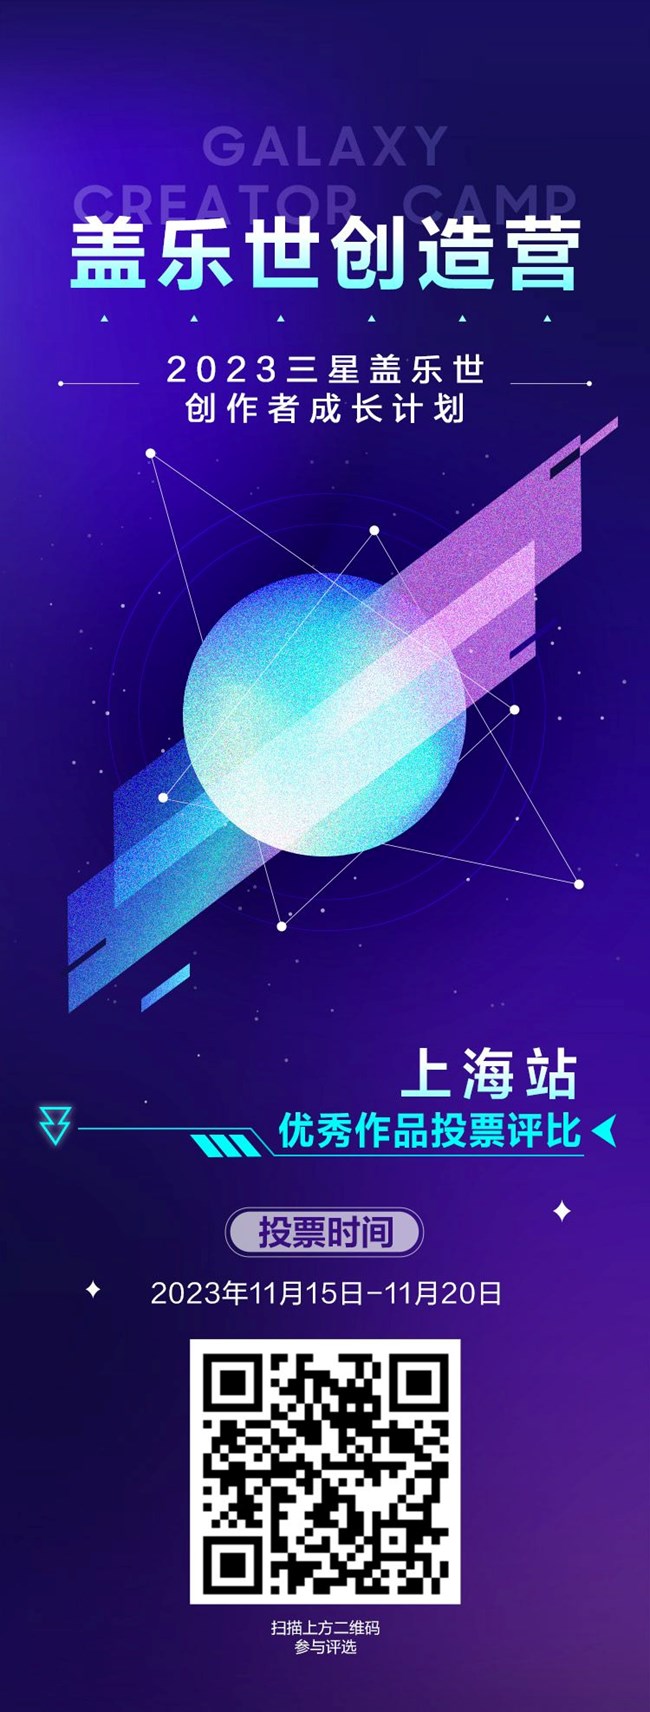 三星盖乐世创造营活动-上海站投票开启！